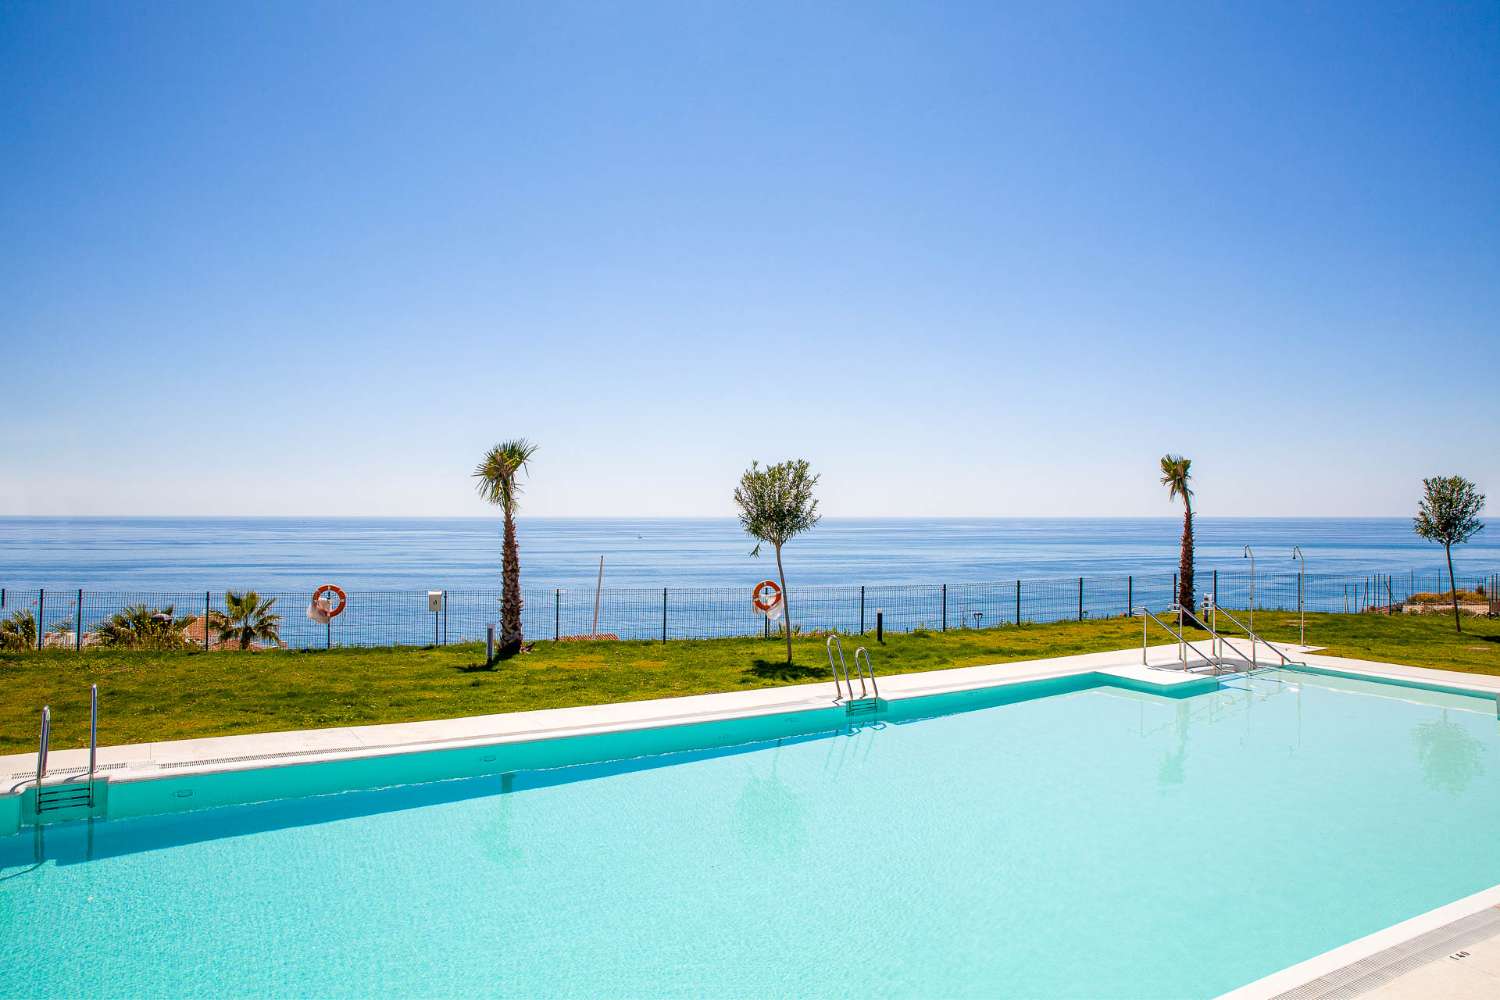 Appartement à vendre sur la côte torrox avec vue magnifique sur la mer, garage et piscine commune